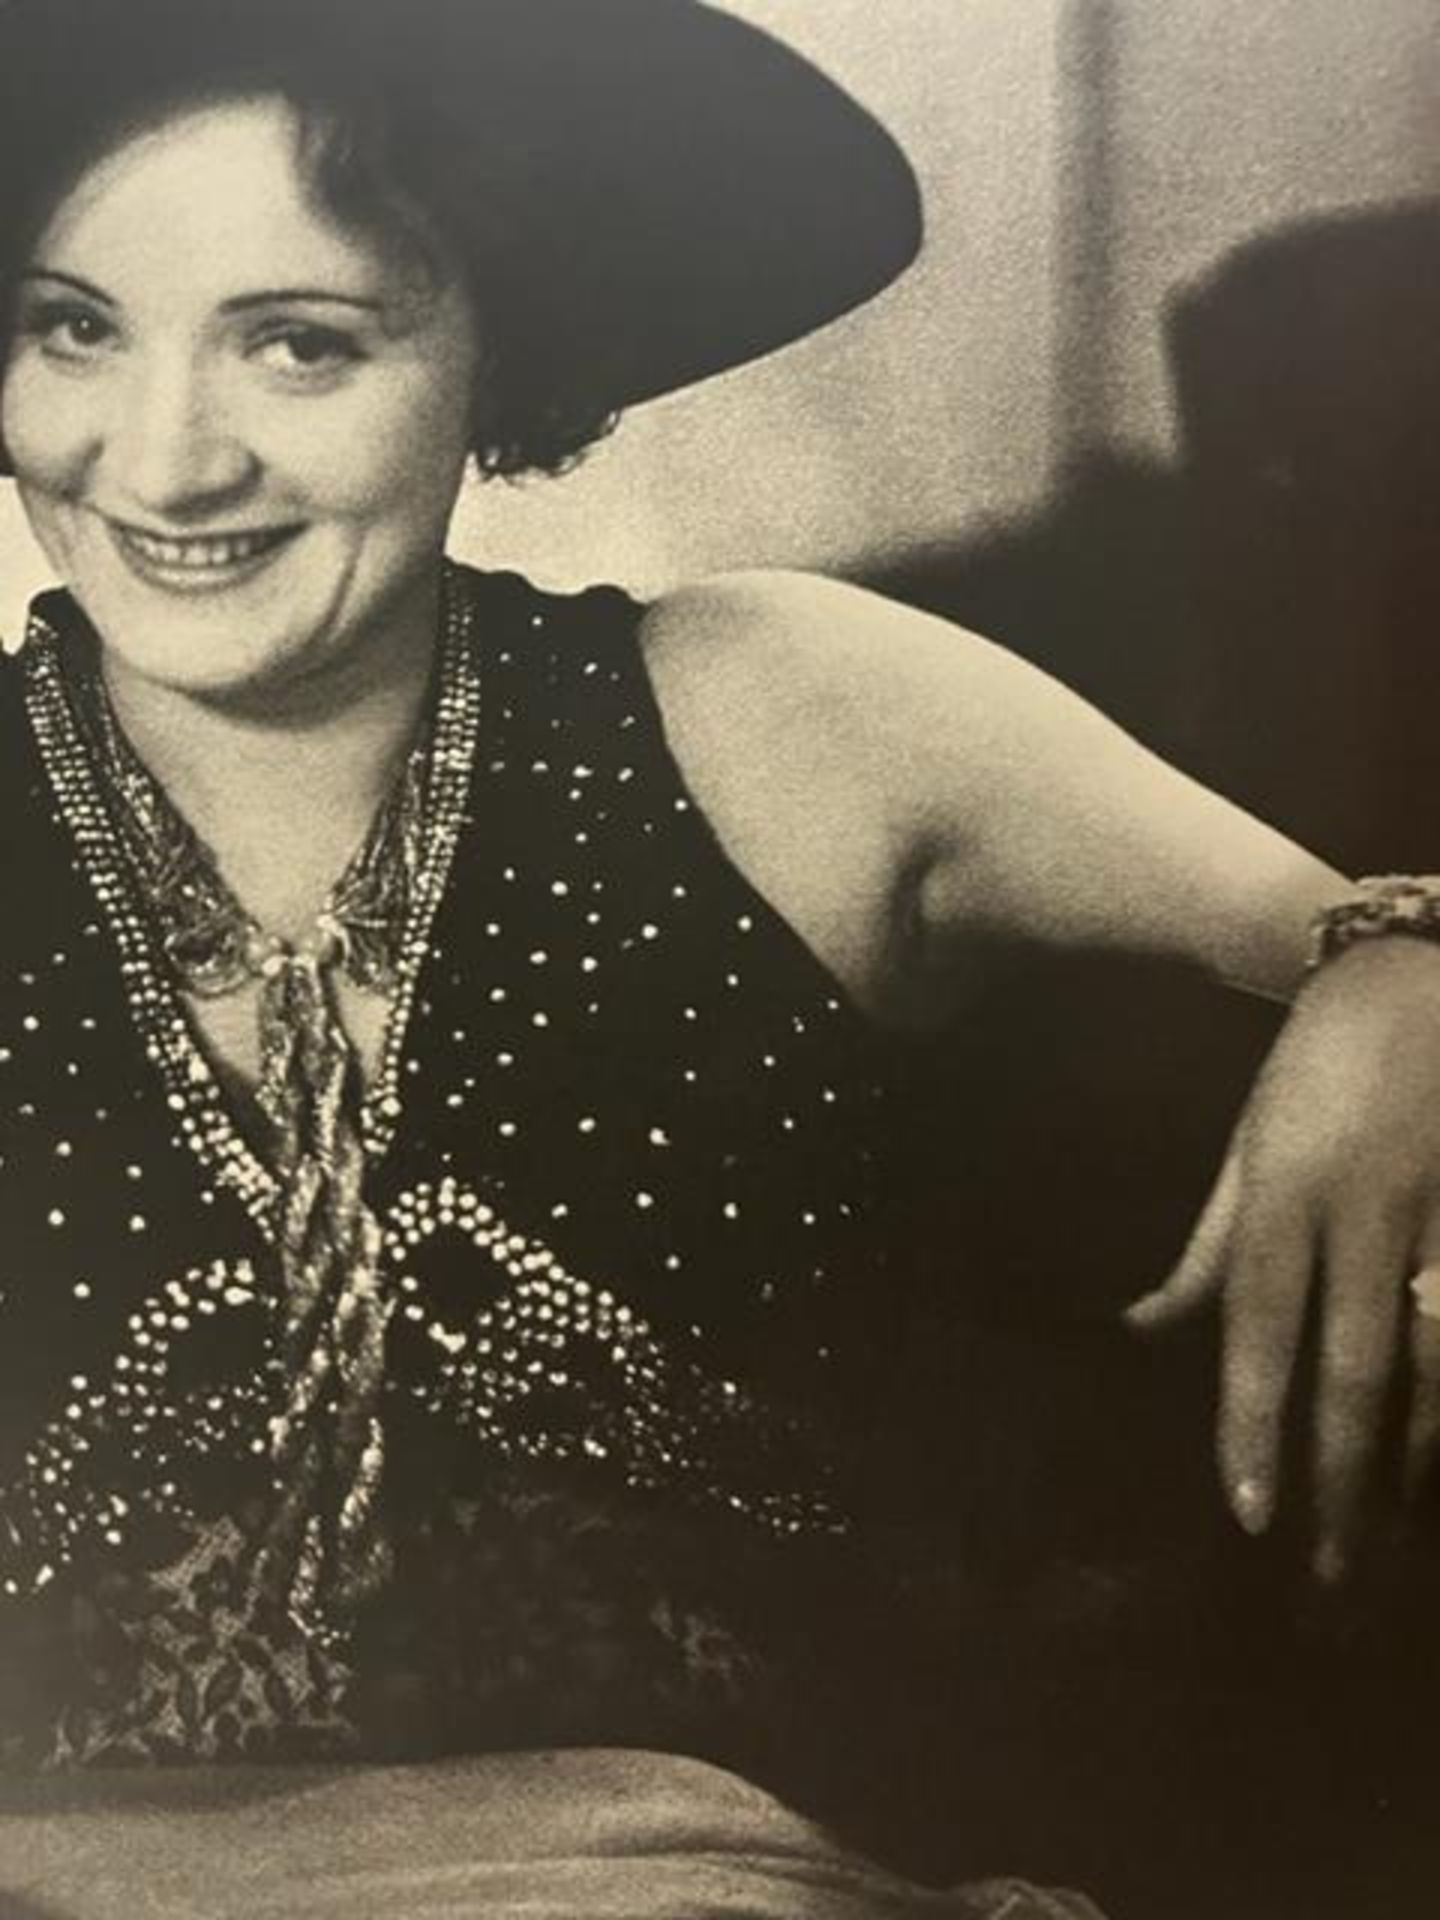 Alfred Eisenstaedt "Marlene Dietrich" Print. - Image 2 of 6